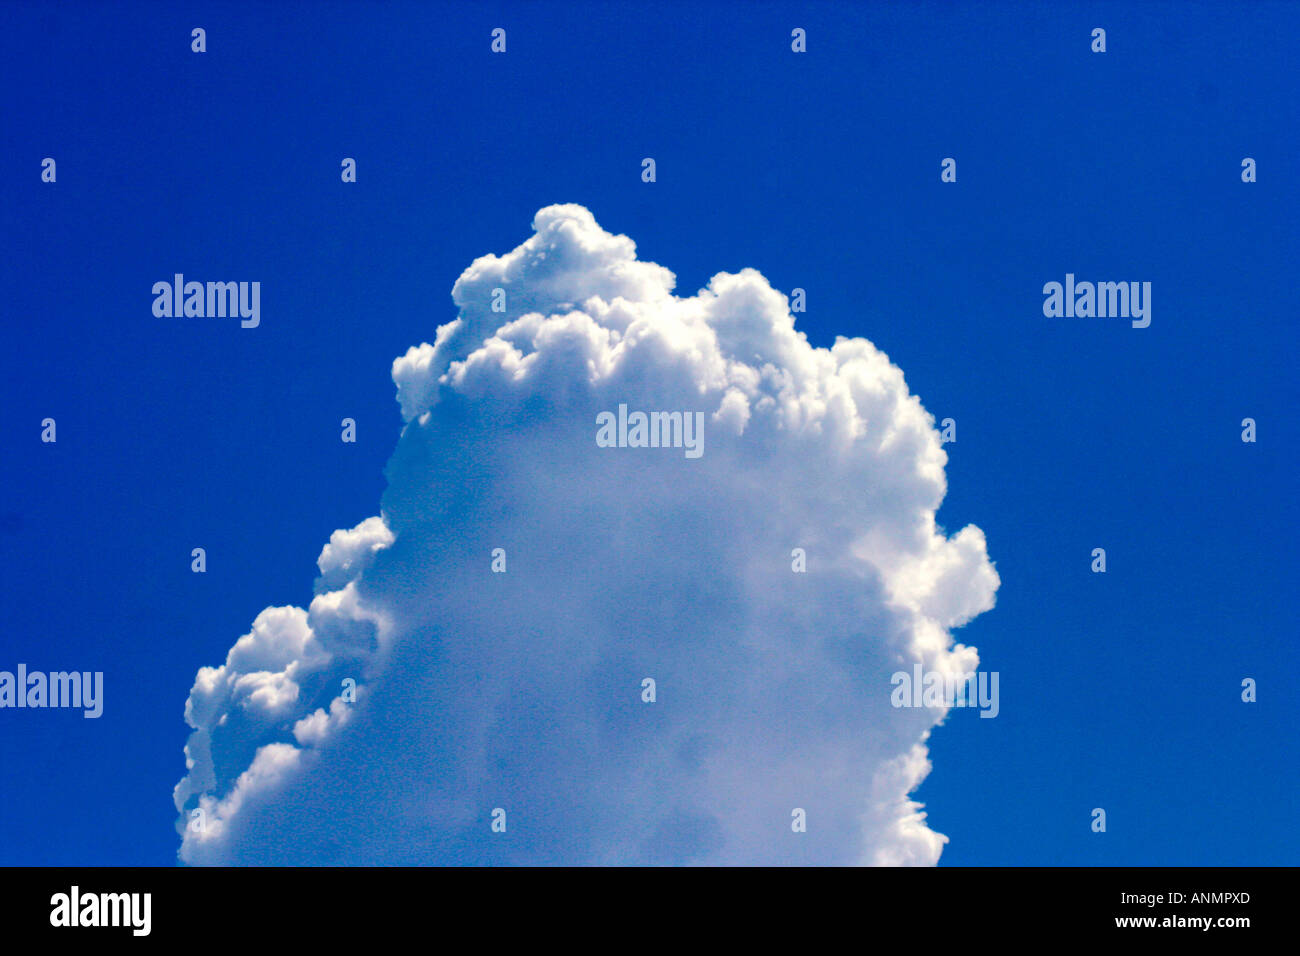 Ein tiefblauer Himmel mit einem Patch von flauschigen weißen Wolke Stockfoto